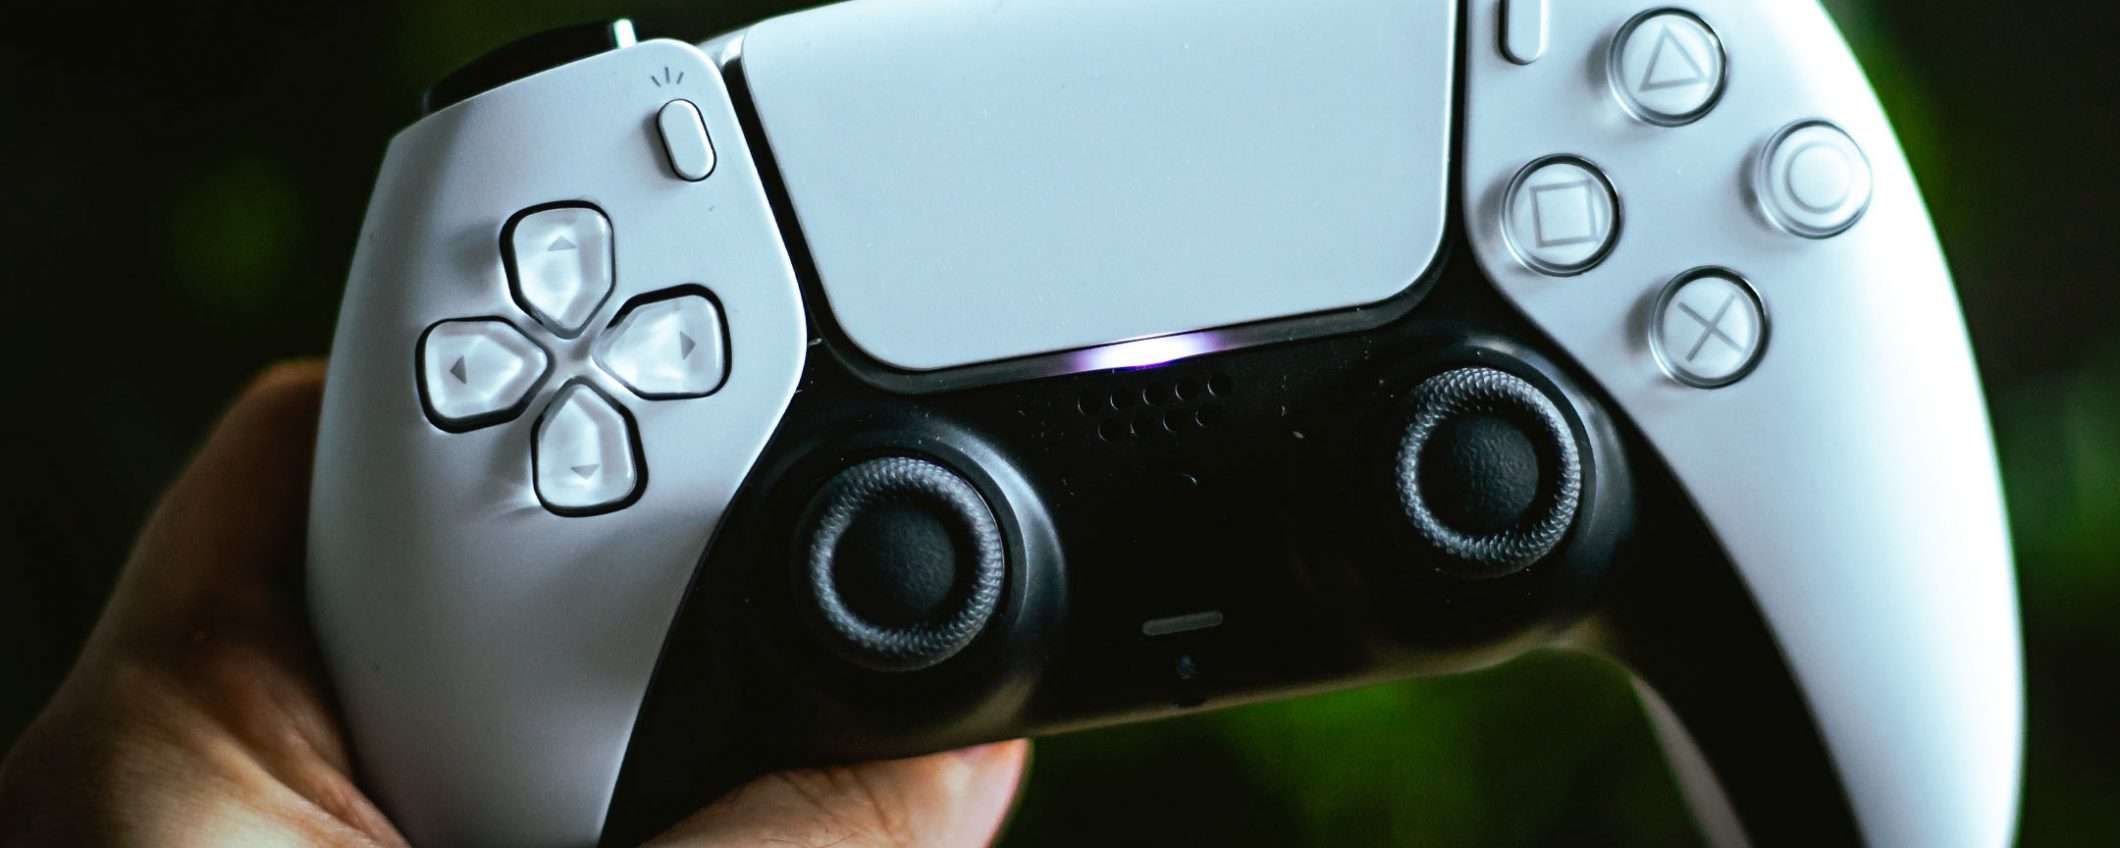 Poche PS5 fino al prossimo anno, lo dice Sony